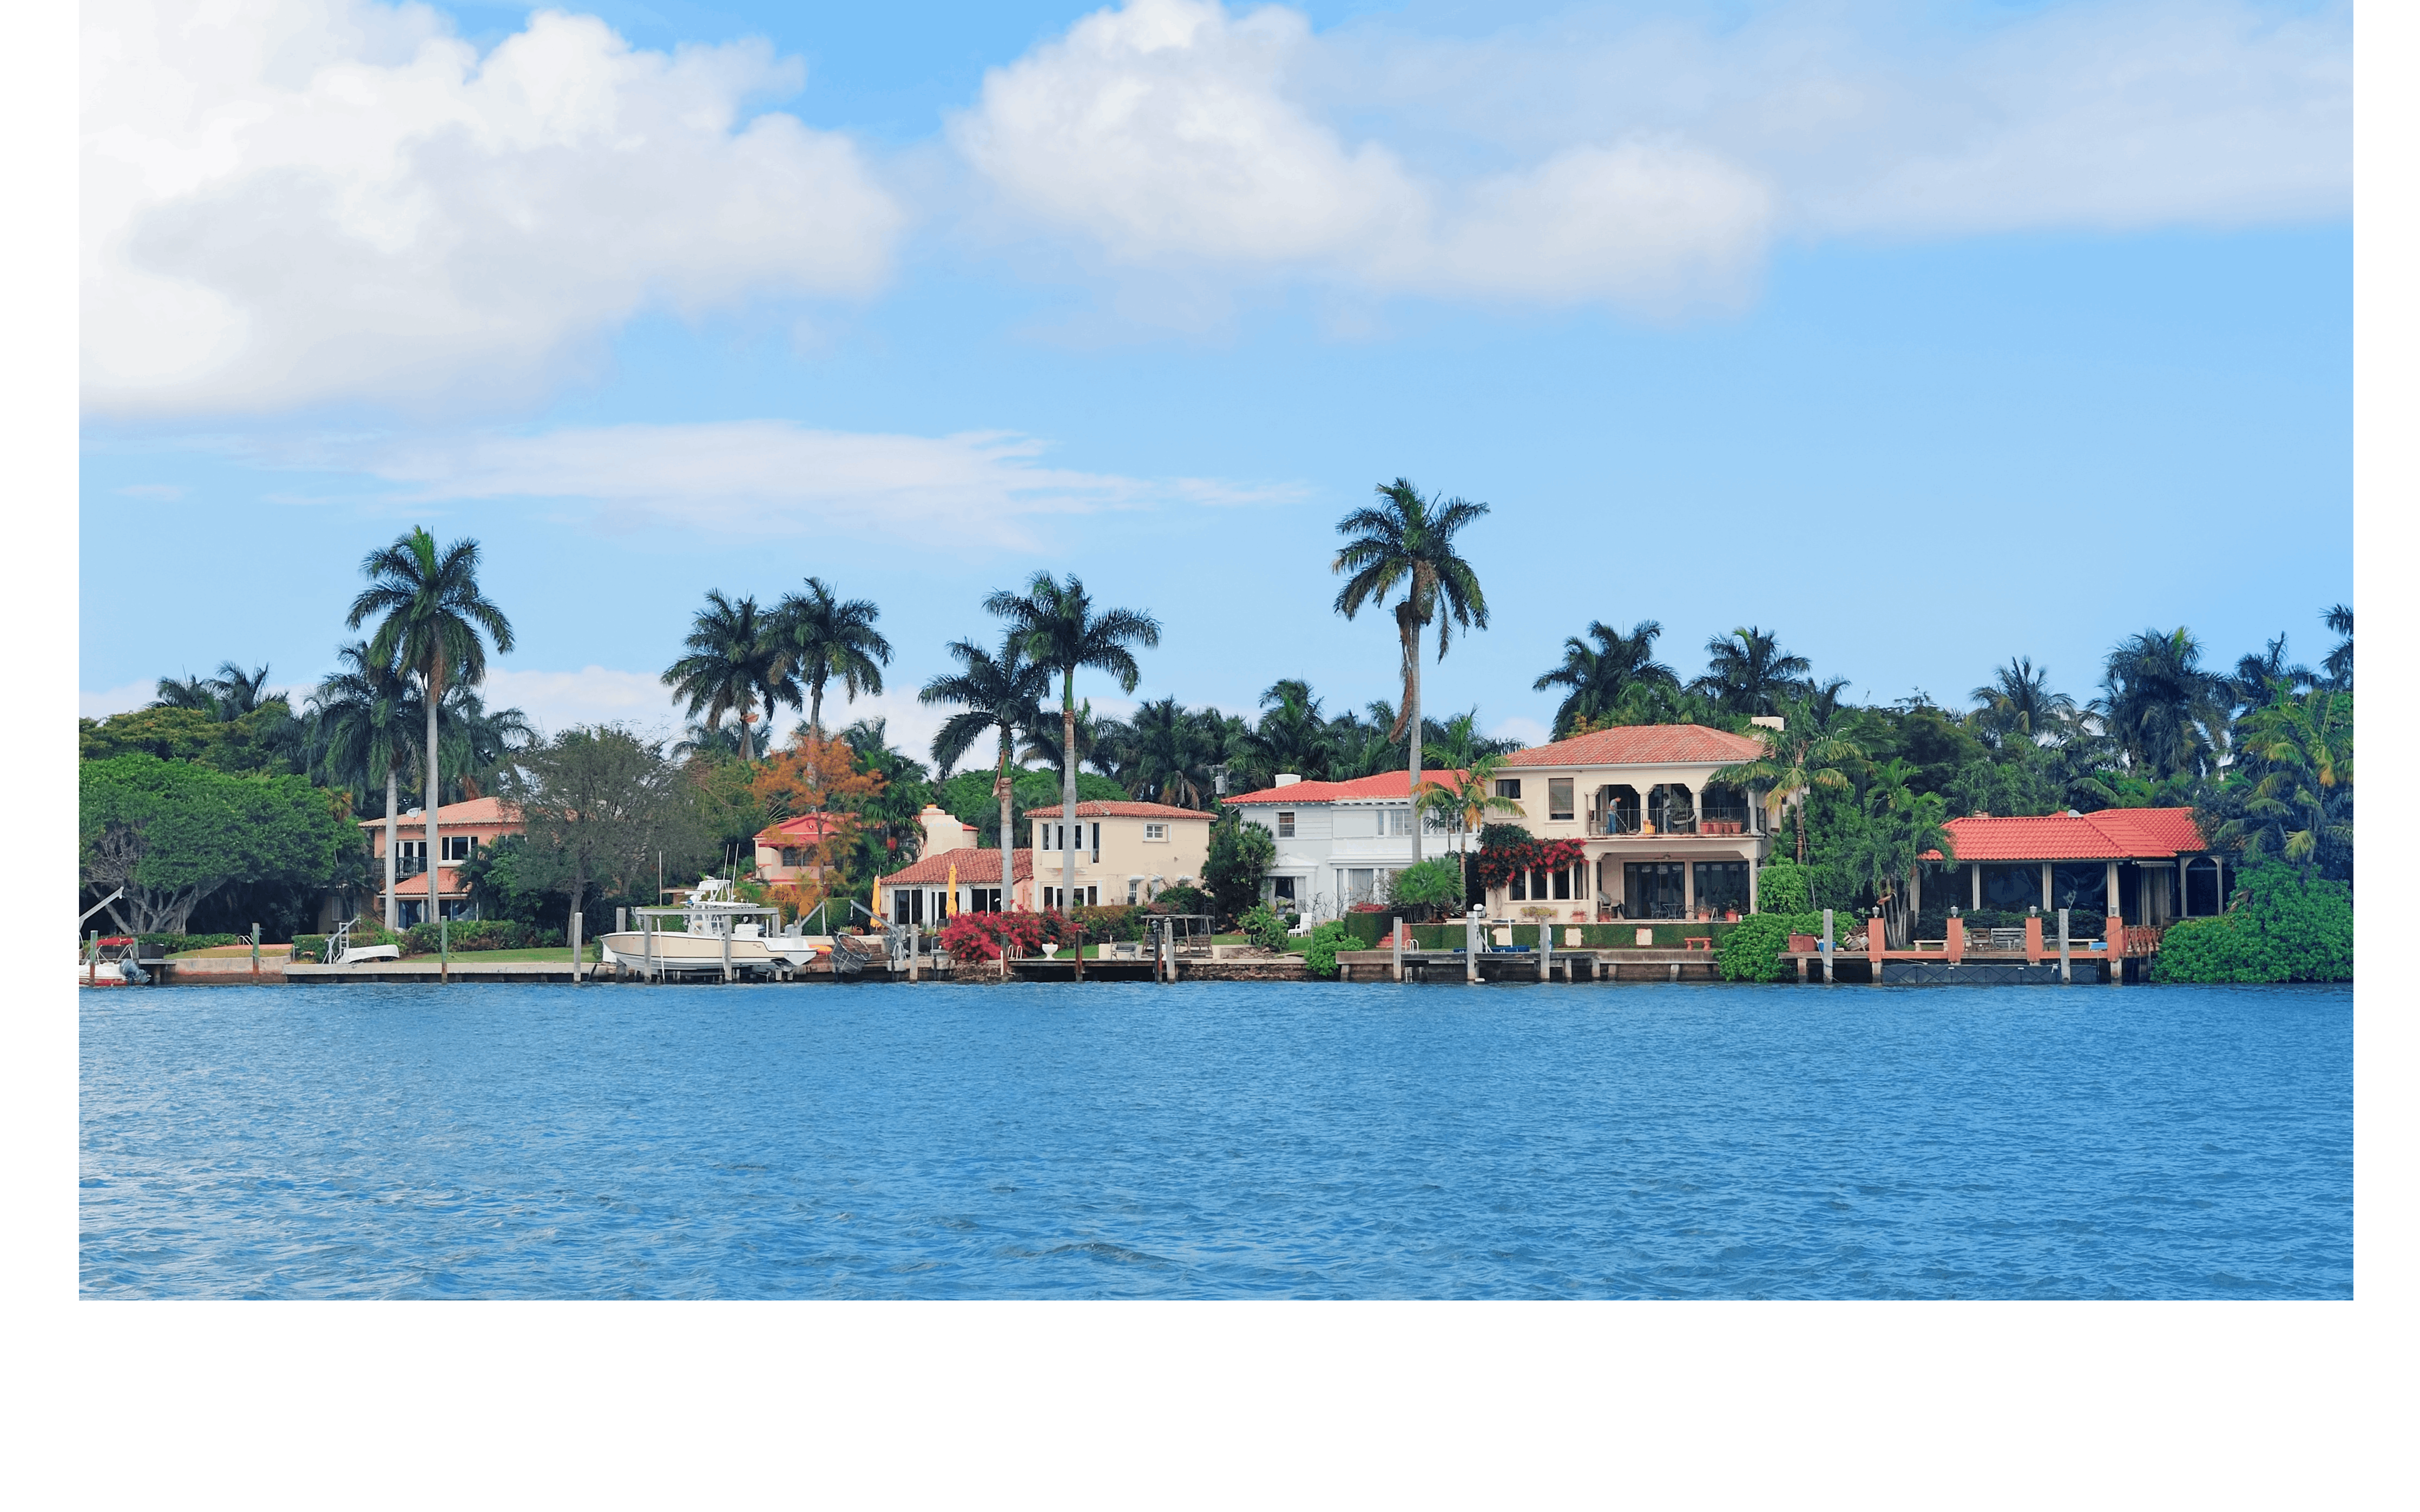 Miami sightseeing cruise tour